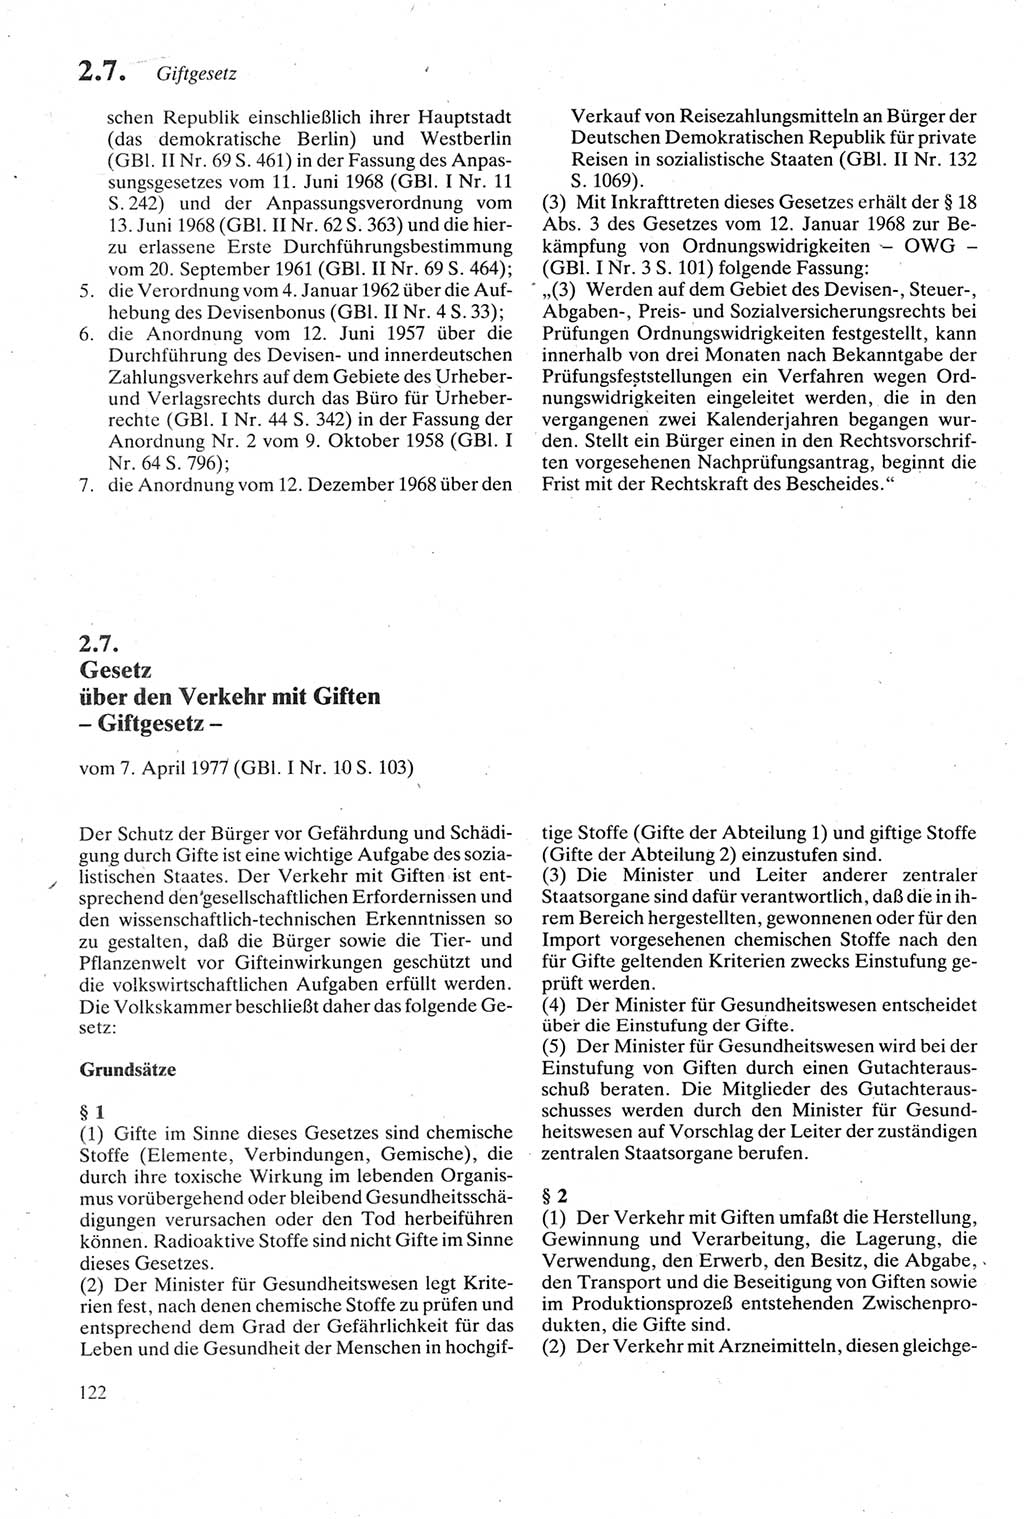 Strafgesetzbuch (StGB) der Deutschen Demokratischen Republik (DDR) sowie angrenzende Gesetze und Bestimmungen 1979, Seite 122 (StGB DDR Ges. Best. 1979, S. 122)